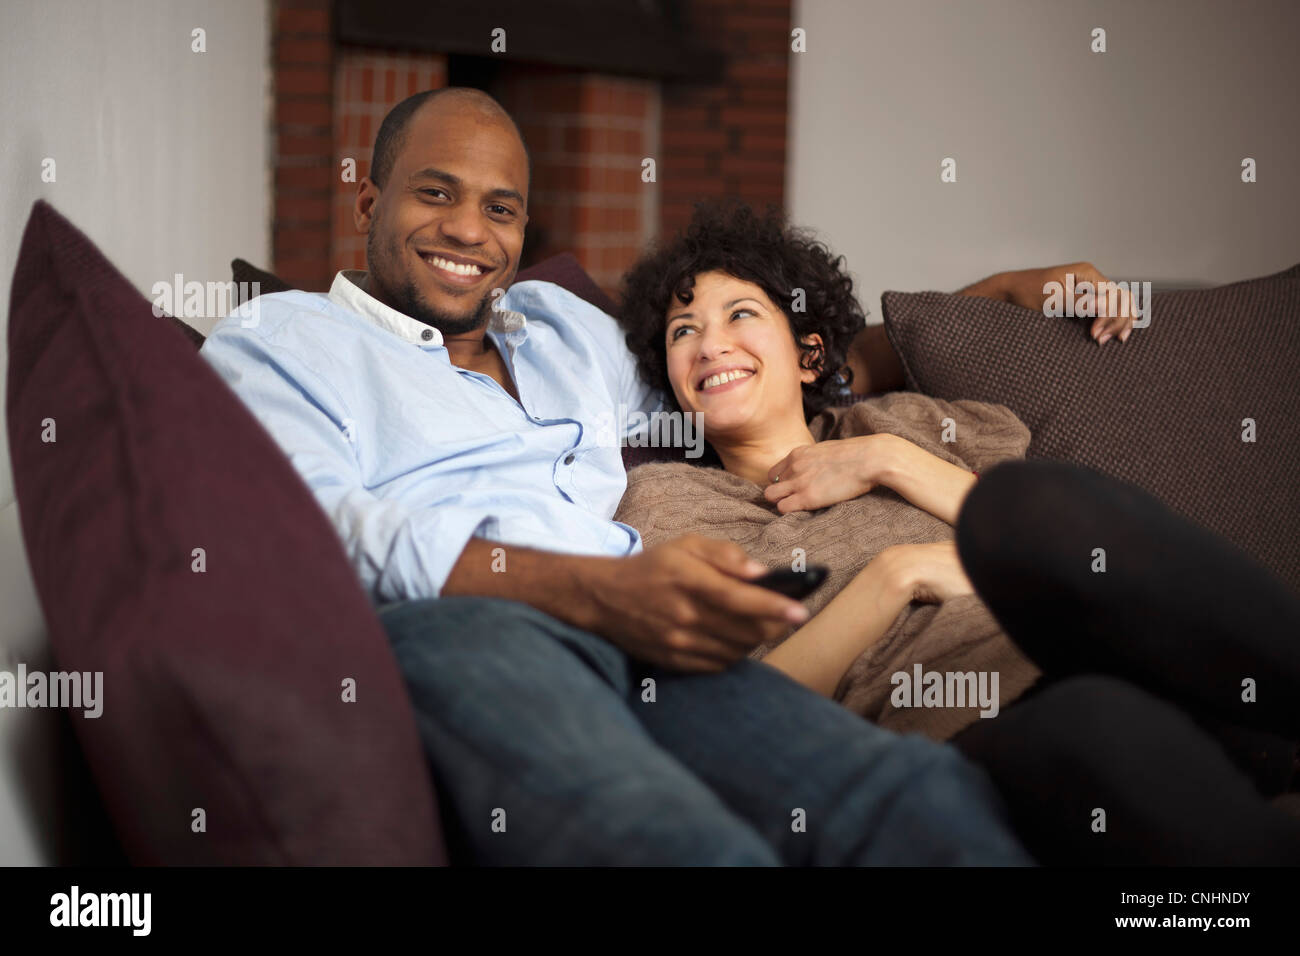 Un felice ridere giovane relax su un divano insieme Foto Stock